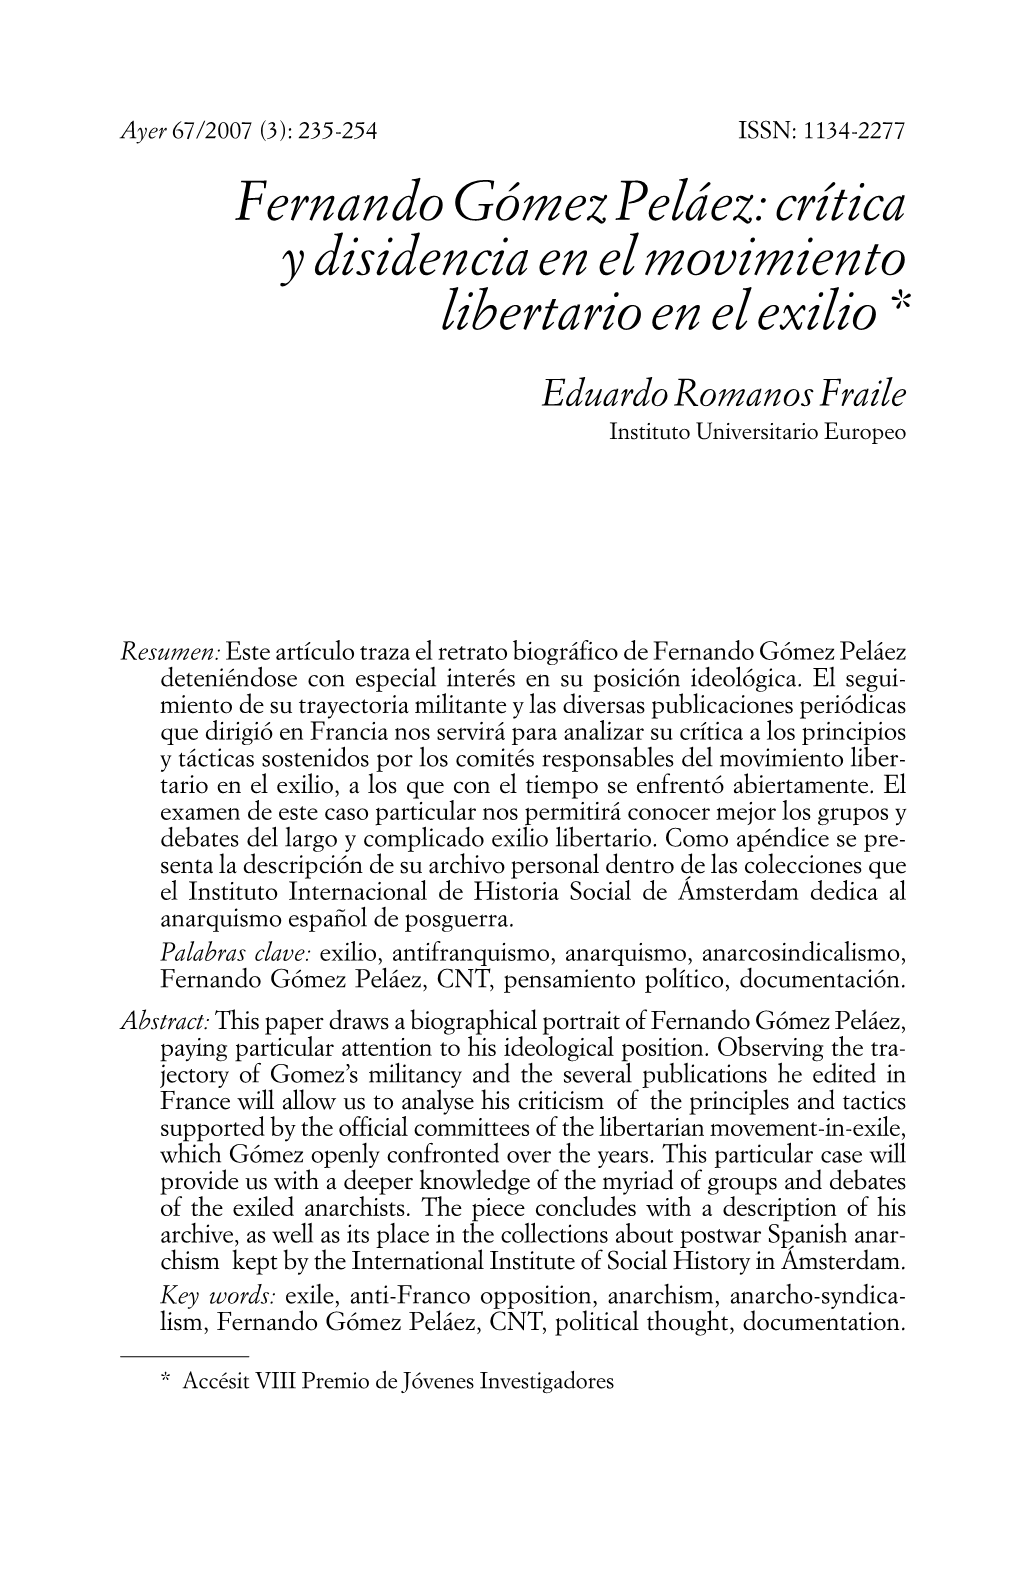 Fernando Gómez Peláez: Crítica Y Disidencia En El Movimiento Libertario En El Exilio * Eduardo Romanos Fraile Instituto Universitario Europeo